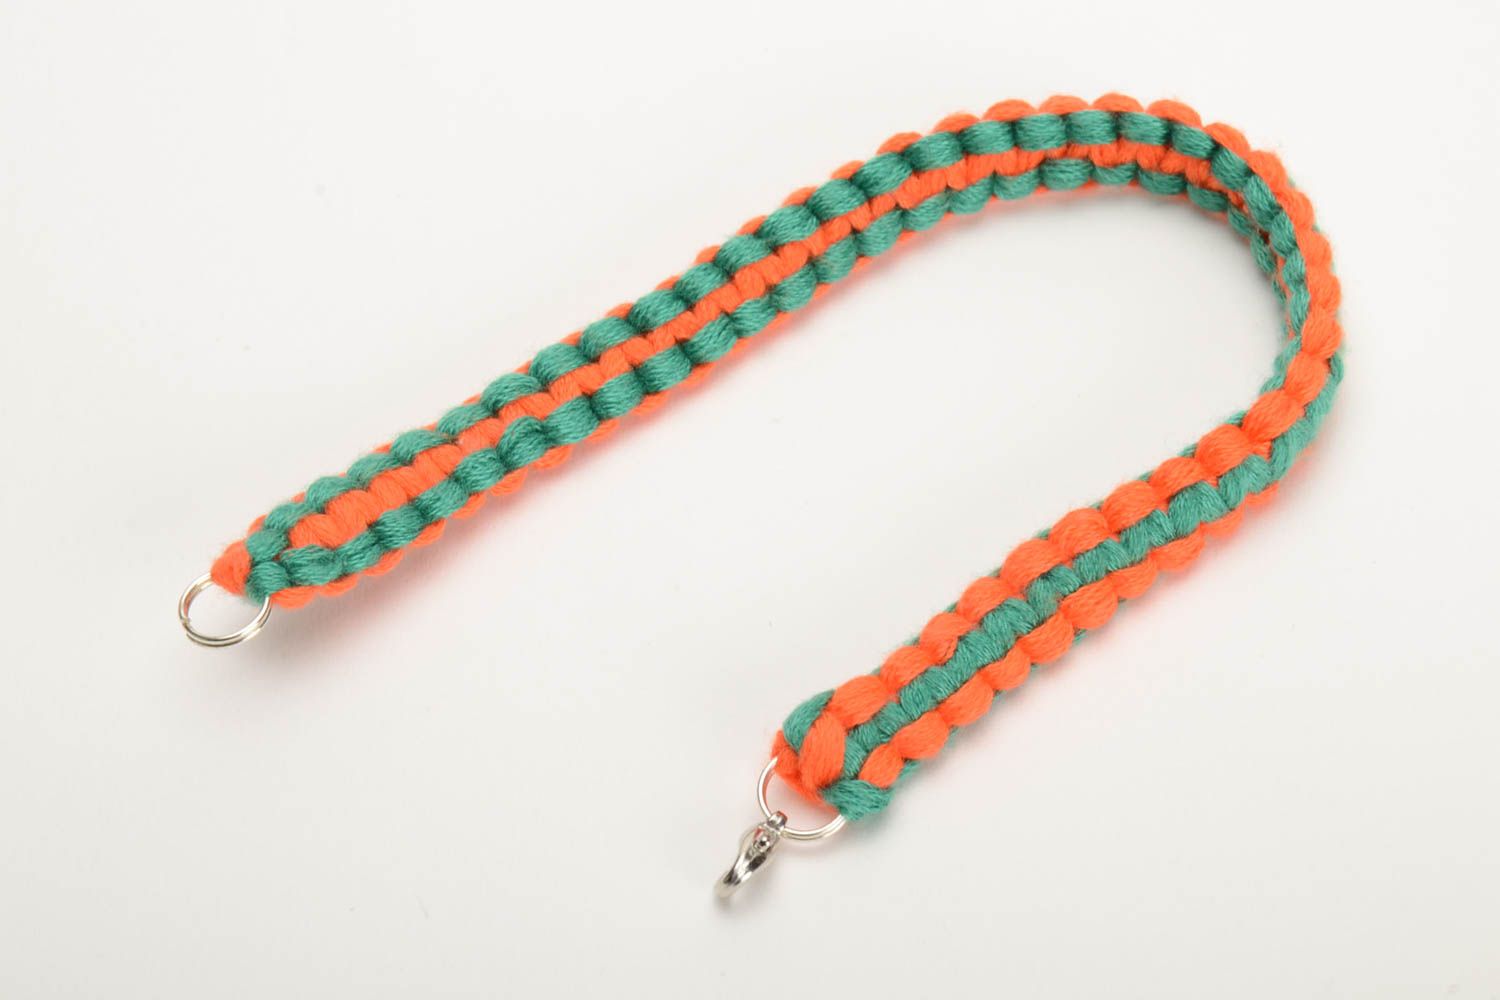 Плетеный браслет из ниток мулине ручной работы тонкий красивый оранжево-зеленый фото 4